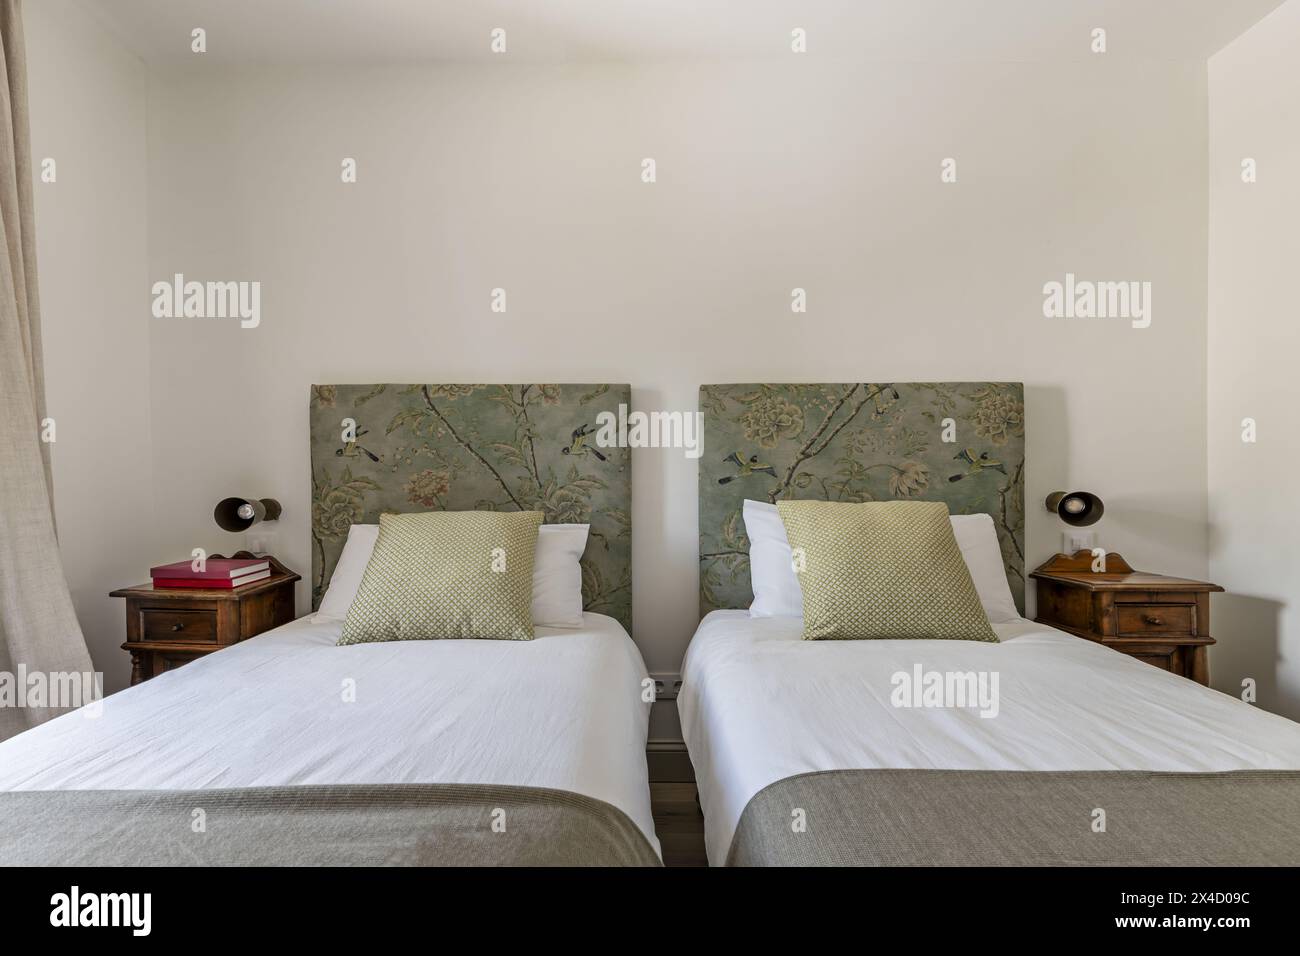 Une chambre avec lits jumeaux avec têtes de lit recouvertes de tissu imprimé, coussins et oreillers et tables de chevet en bois de style vintage Banque D'Images